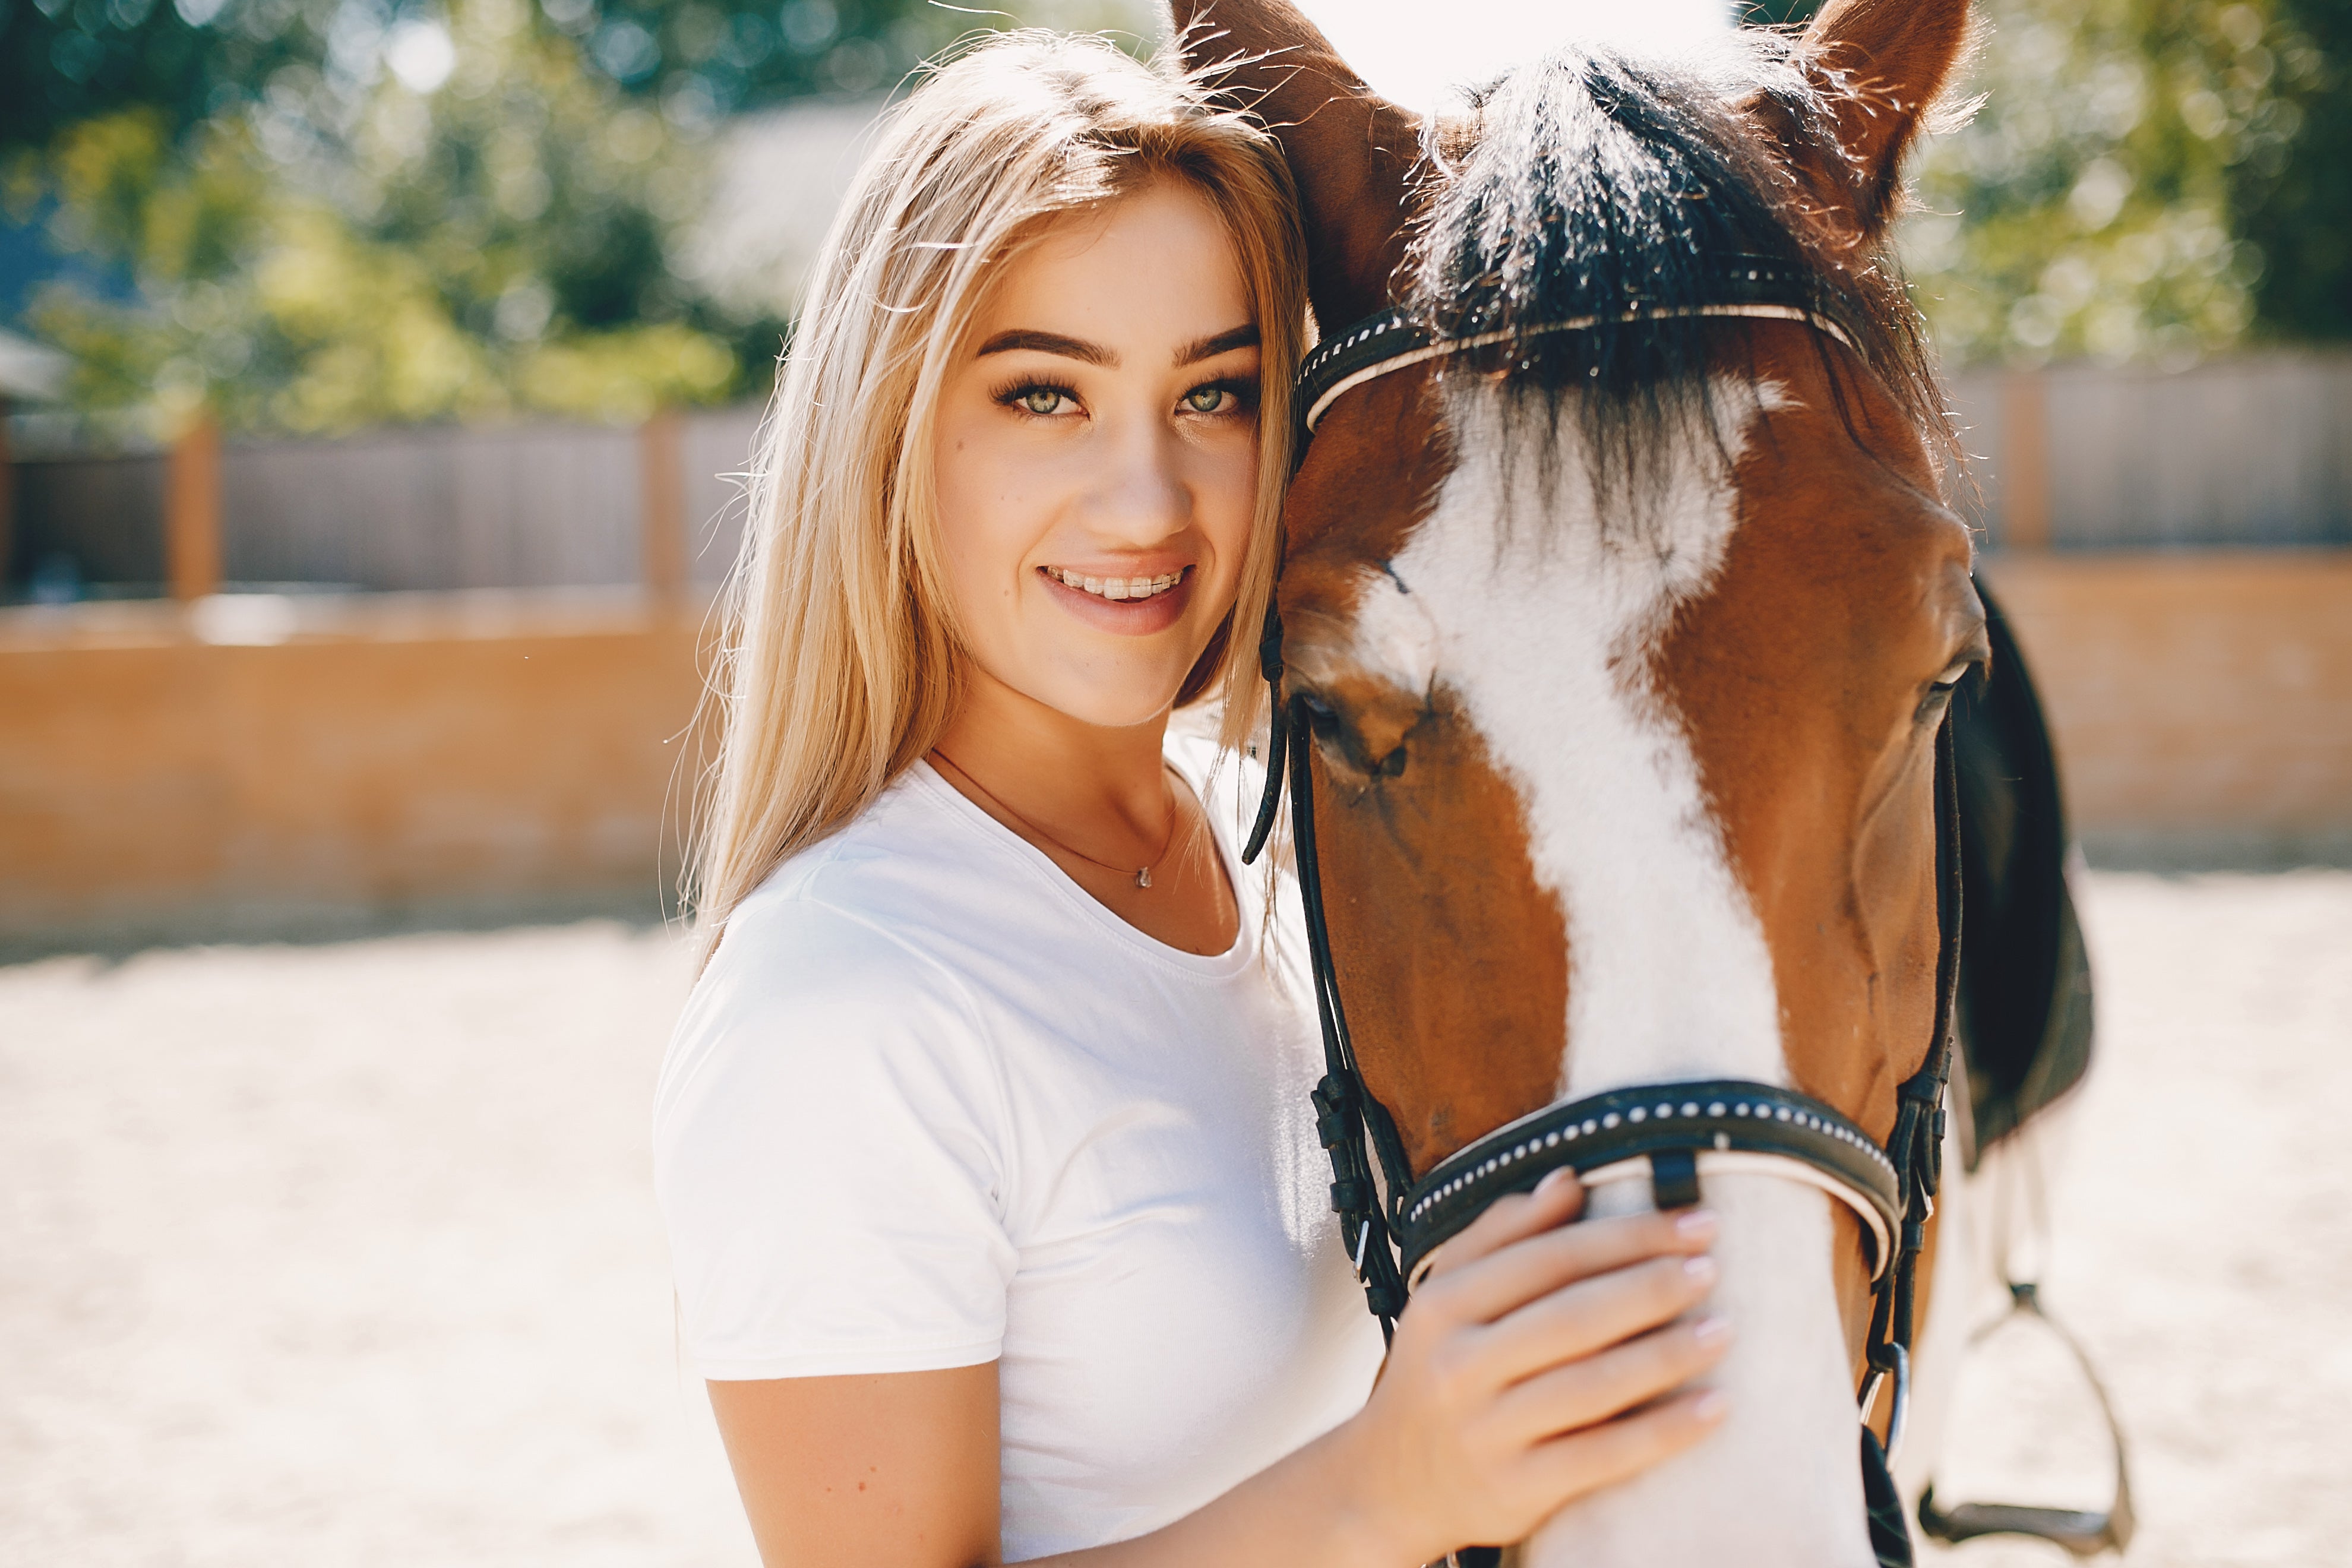 Foto einer lächelnden Frau, die liebevoll neben einem Pferd steht und direkt in die Kamera blickt, symbolisiert die harmonische Beziehung zwischen Mensch und Tier, ideal für eine Webseite, die sich auf Produkte und Dienstleistungen für Pferde und ihre Besitzer spezialisiert hat.